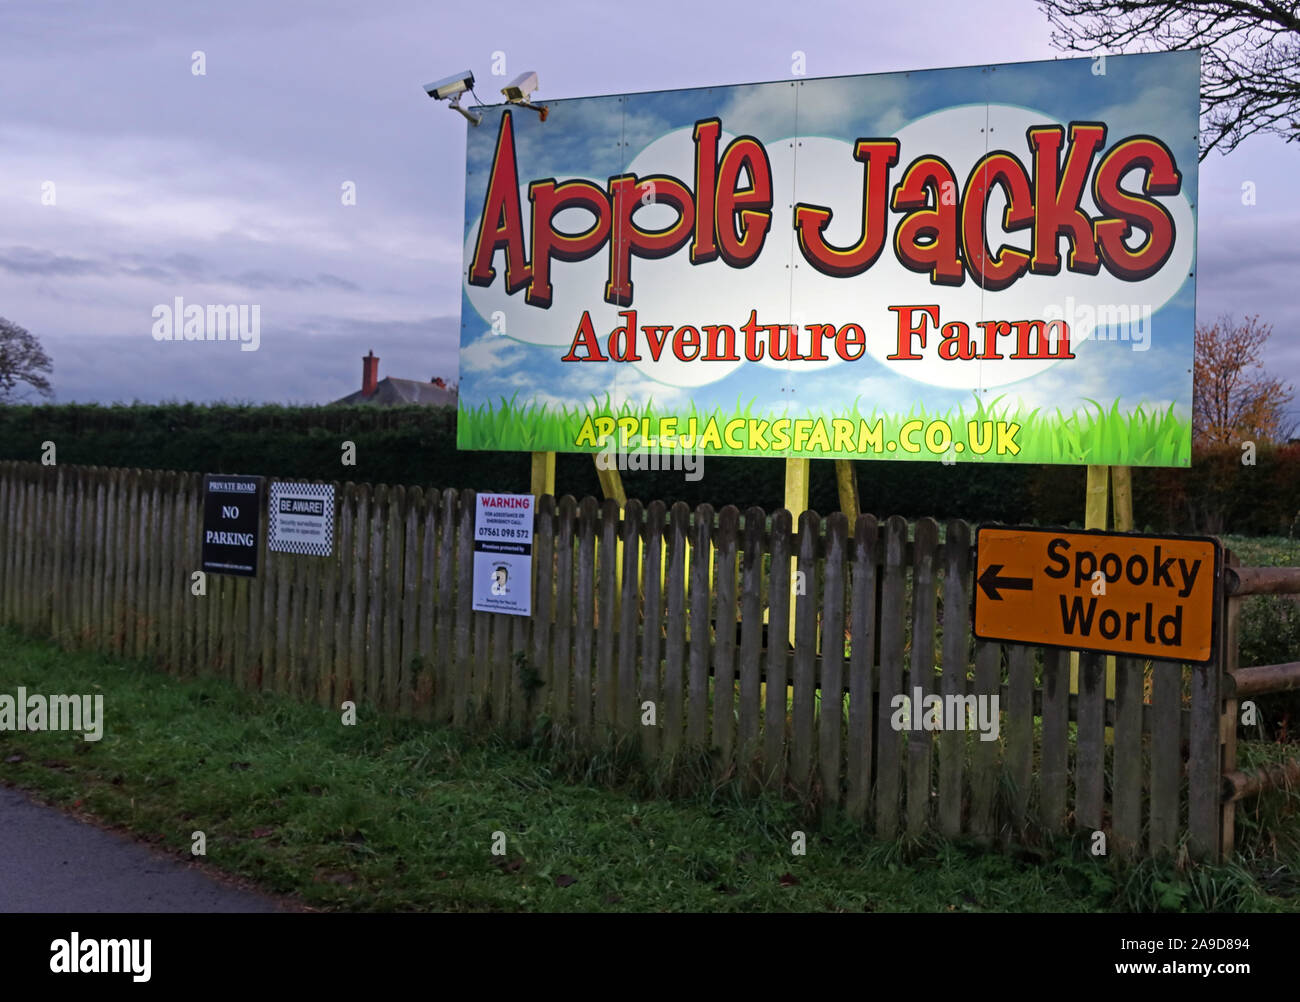 Jacks Apple ferme Aventure Spooky (Monde), attraction touristique, la Ferme Aventure, Stretton Rd, Appleton Thorn, Warrington, Angleterre,UK, WA4 4NW Banque D'Images